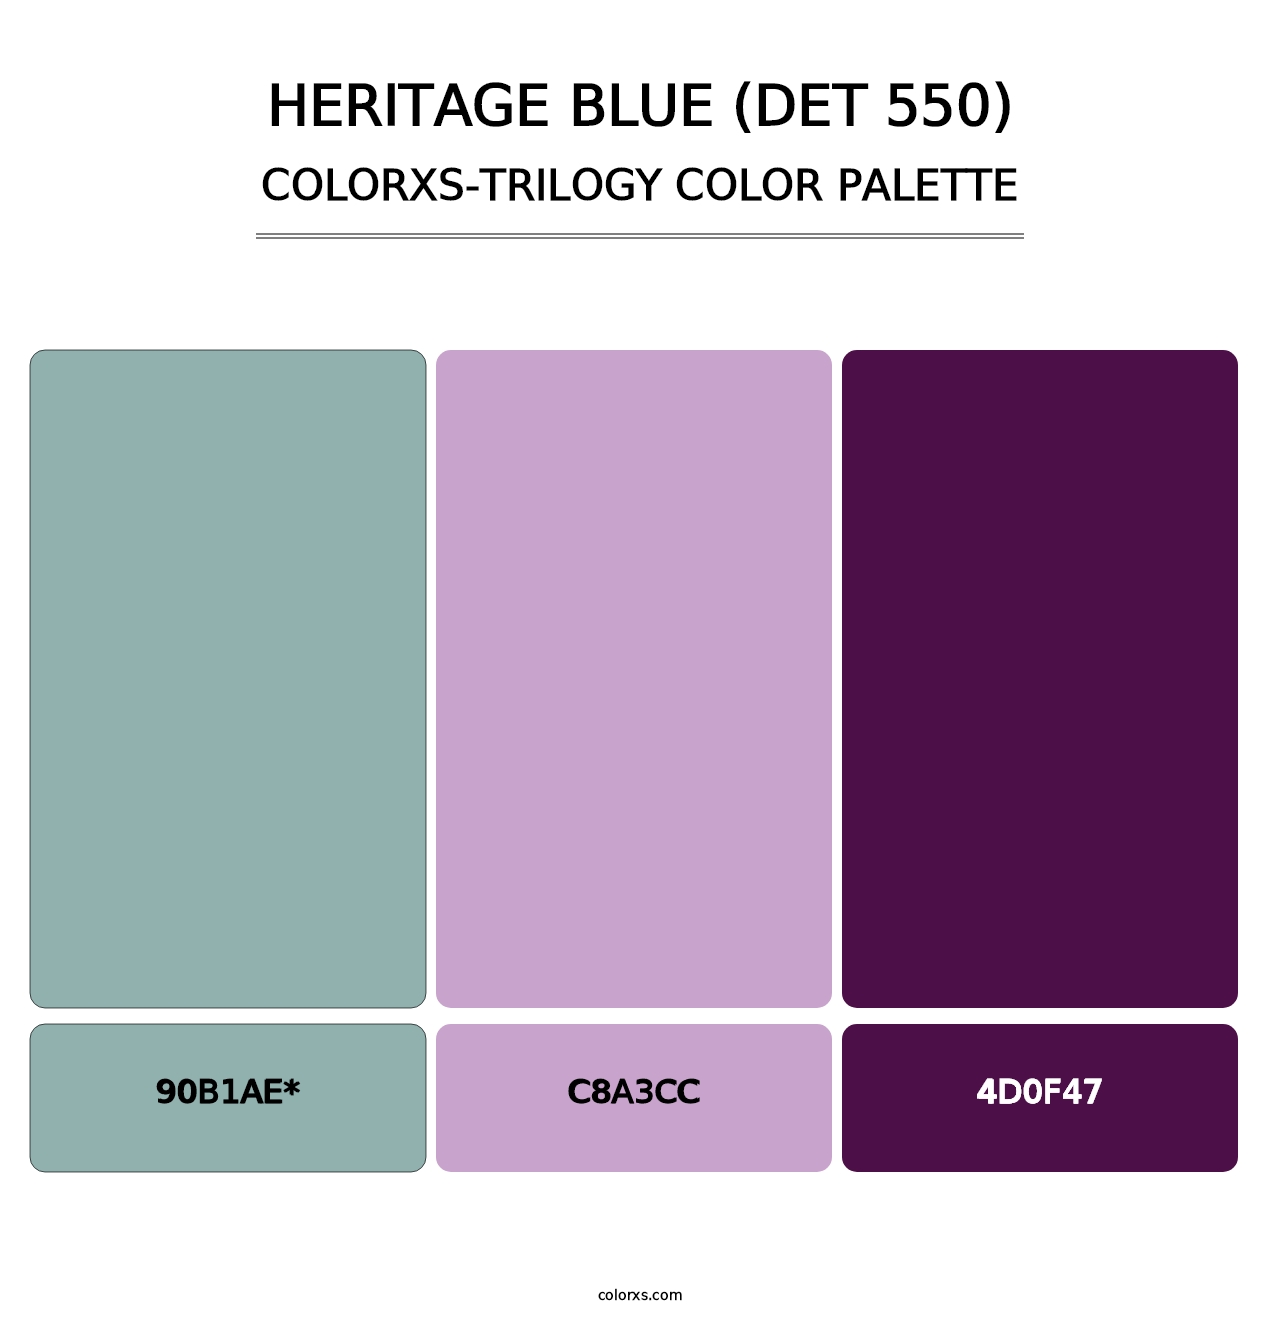 Heritage Blue (DET 550) - Colorxs Trilogy Palette